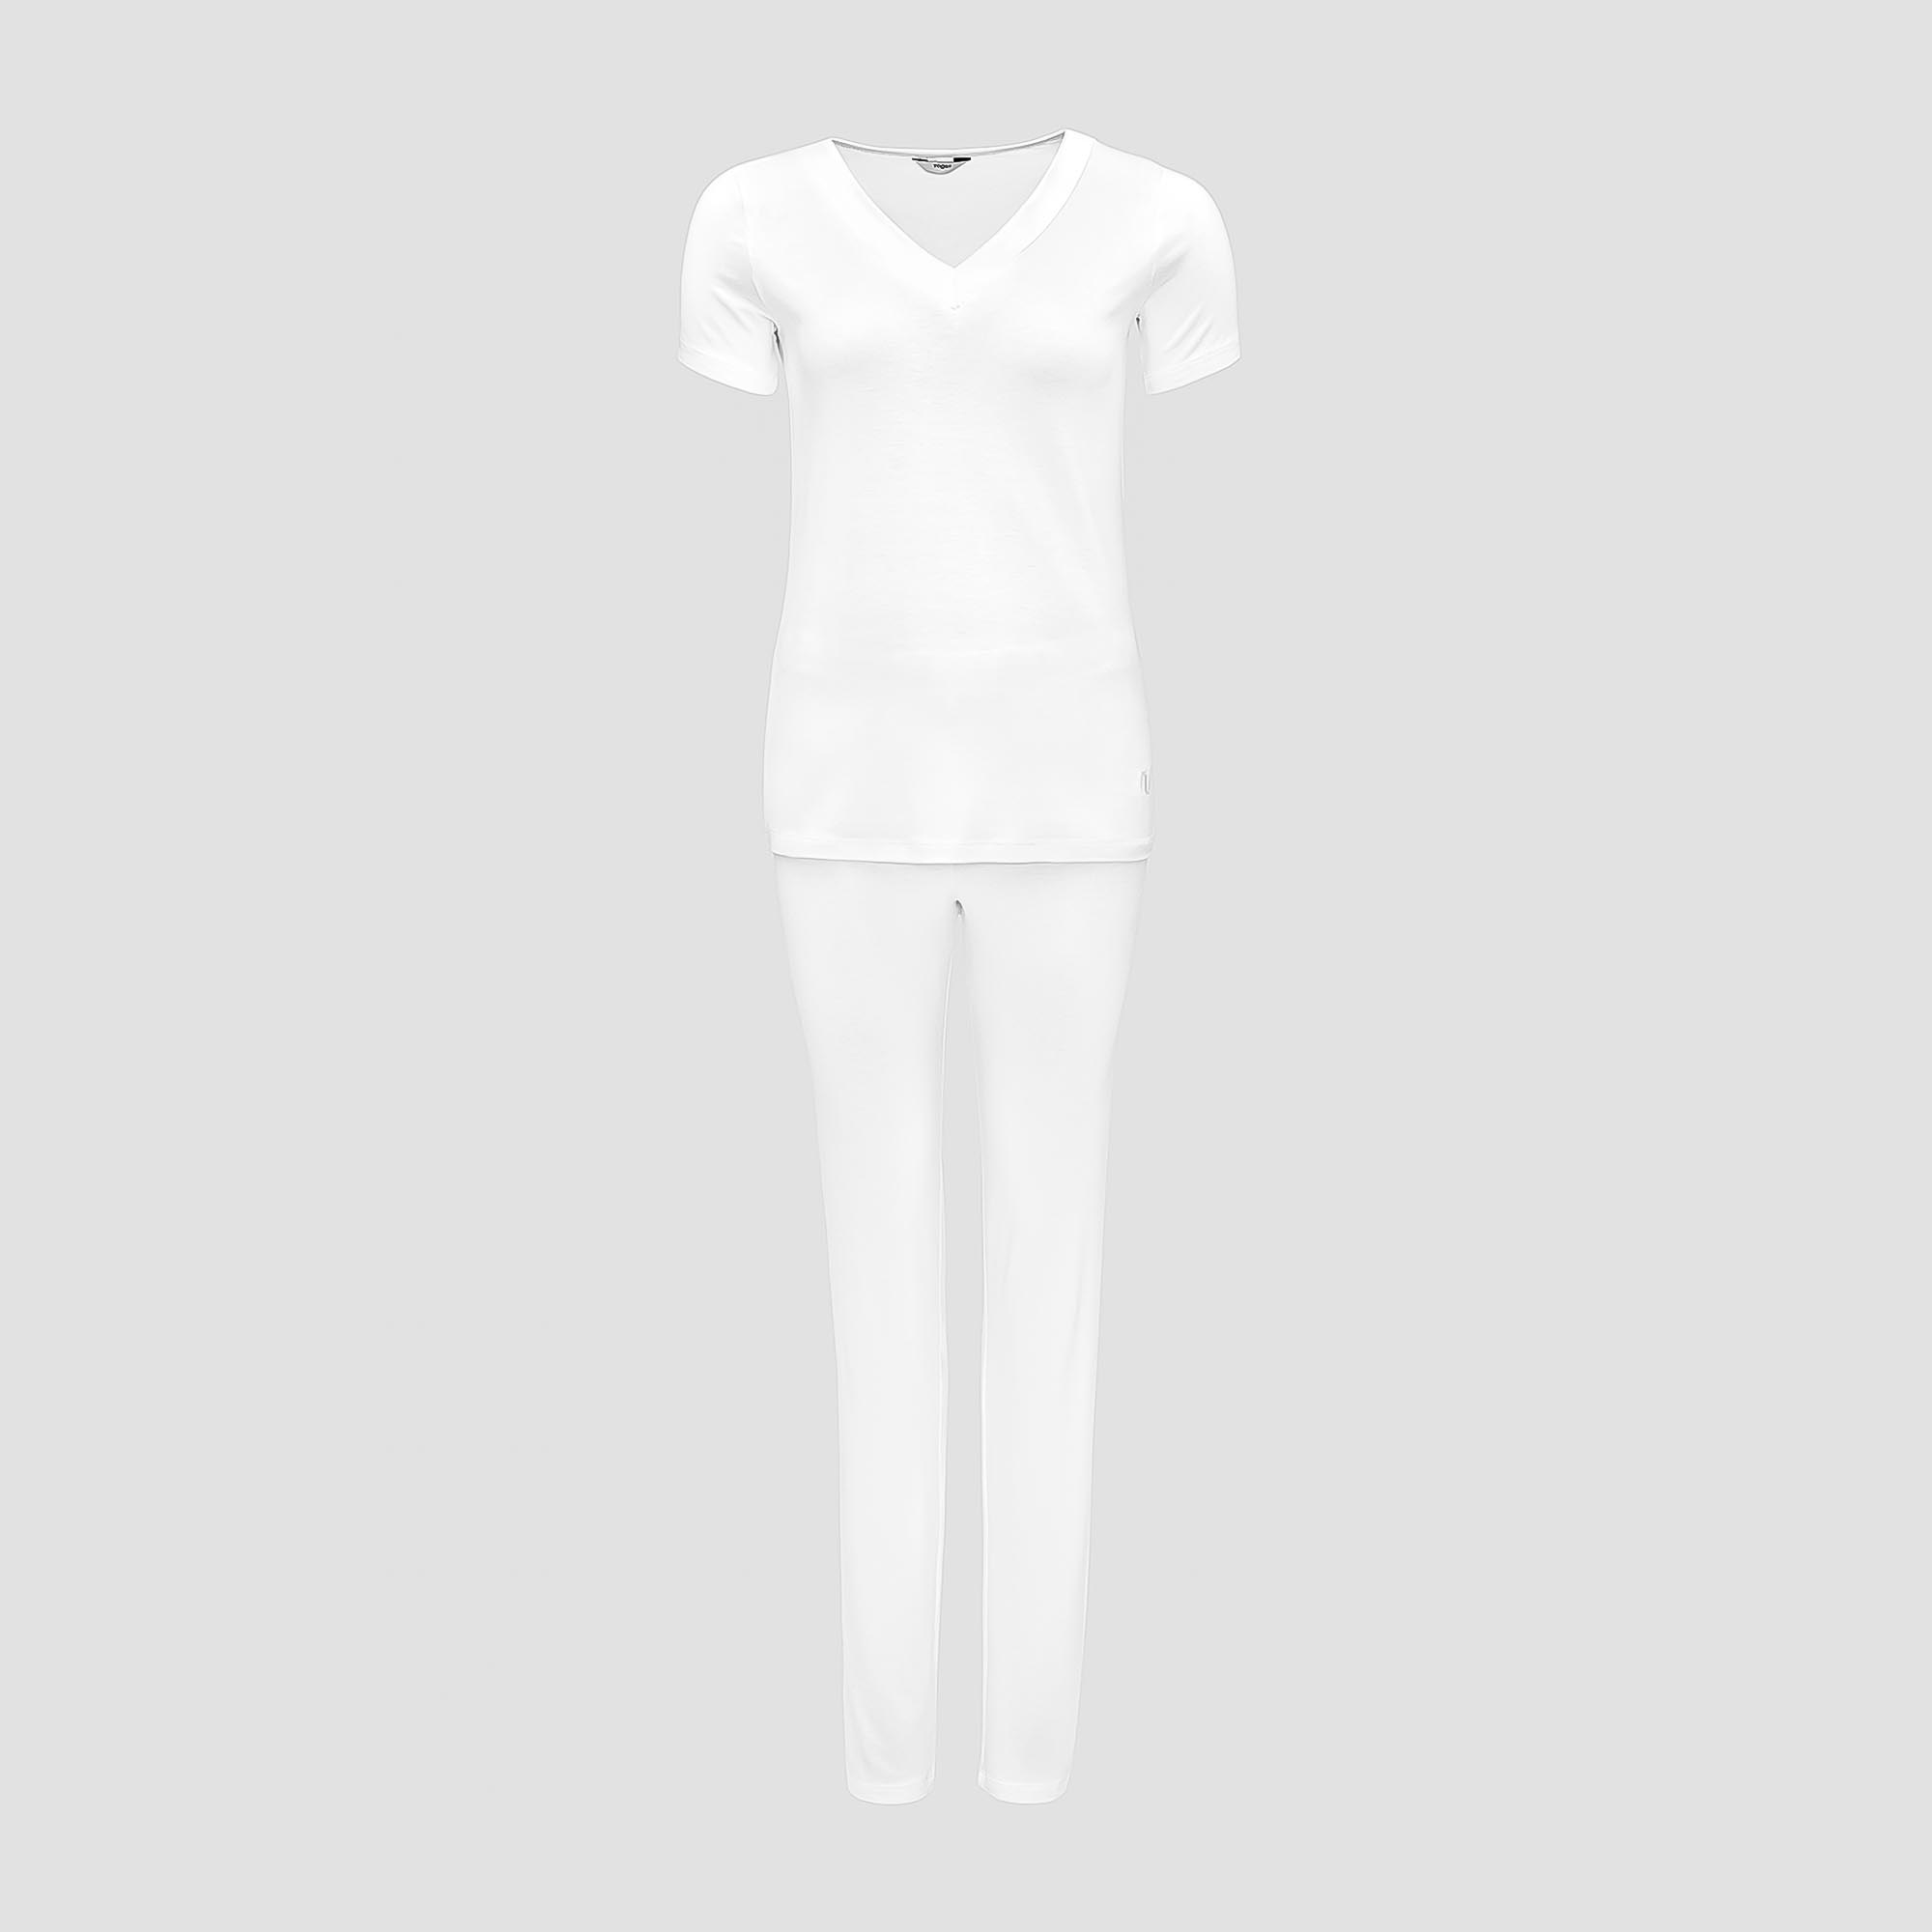 Пижама Togas Ингелла белая женская L(48) 2 предмета